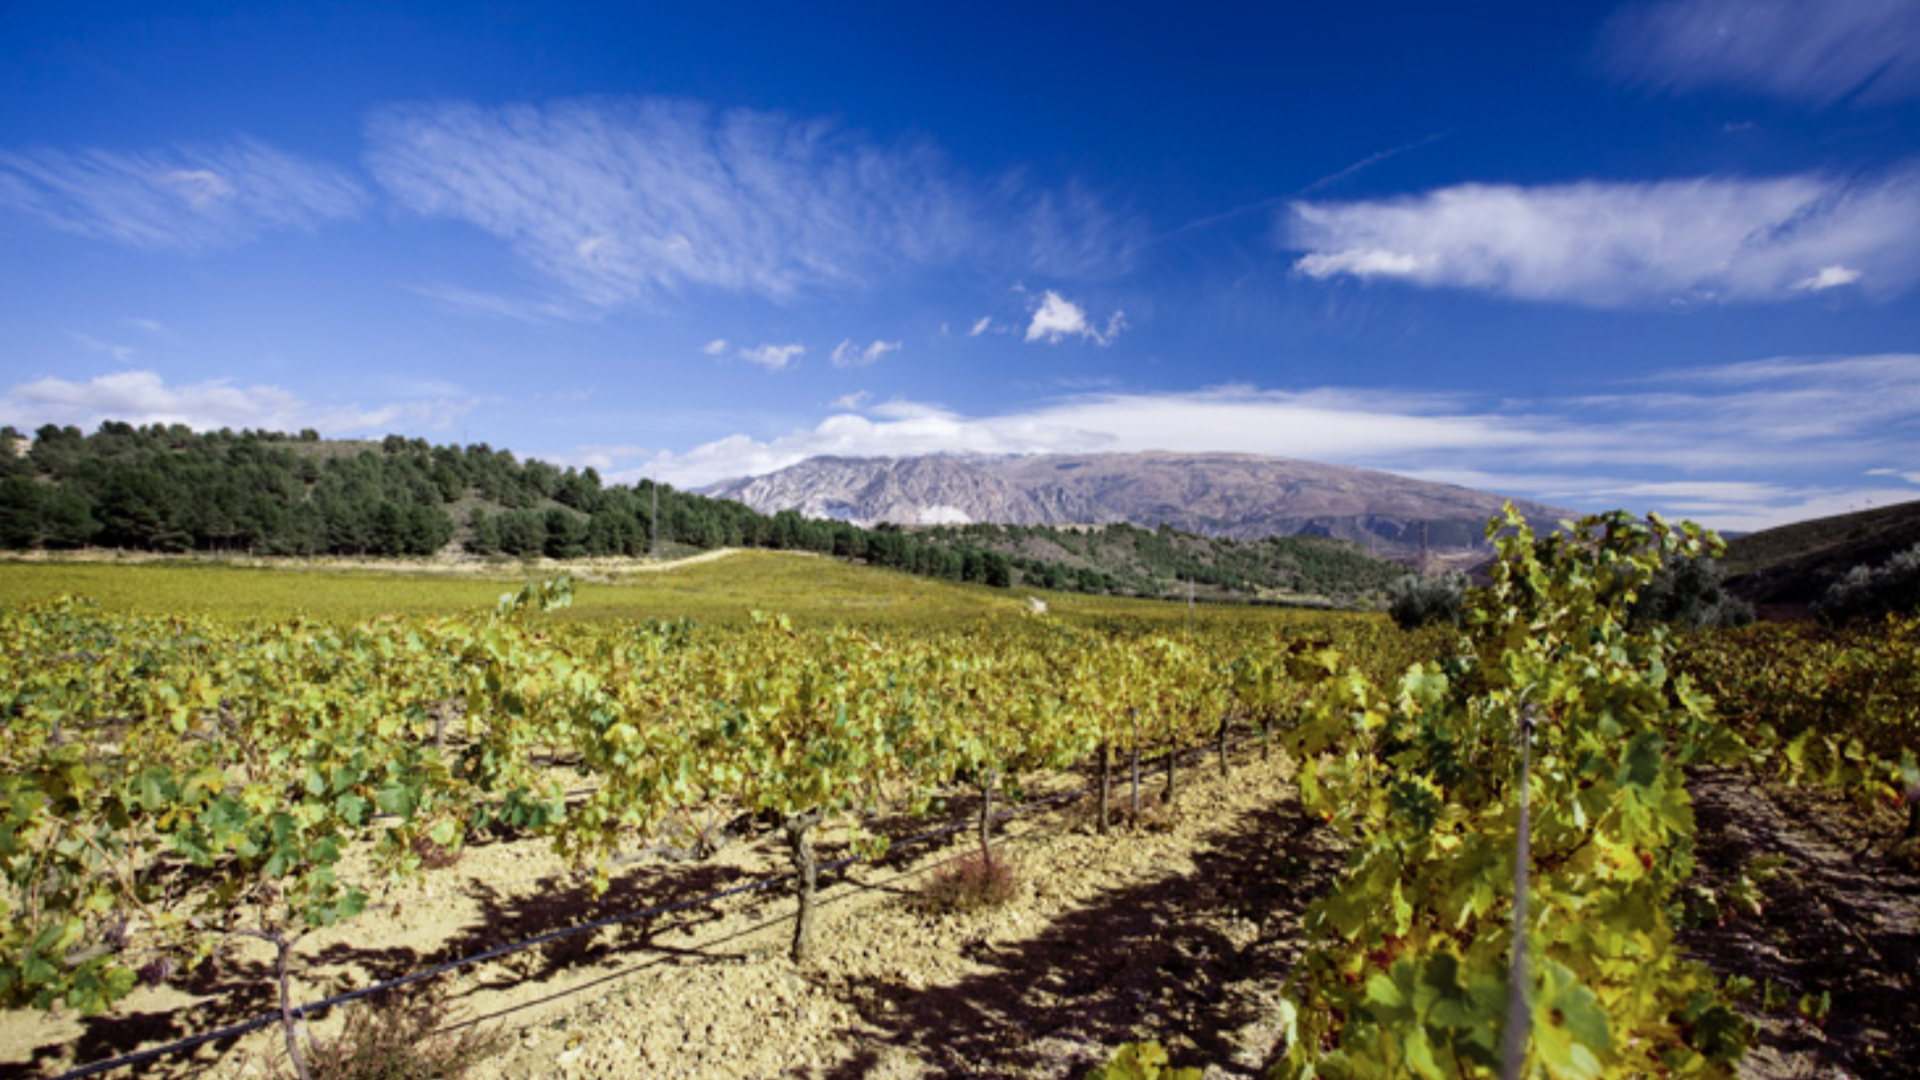 La ruta de bodegas para recorrer las Alpujarras granadinas bebiendo buenos vinos